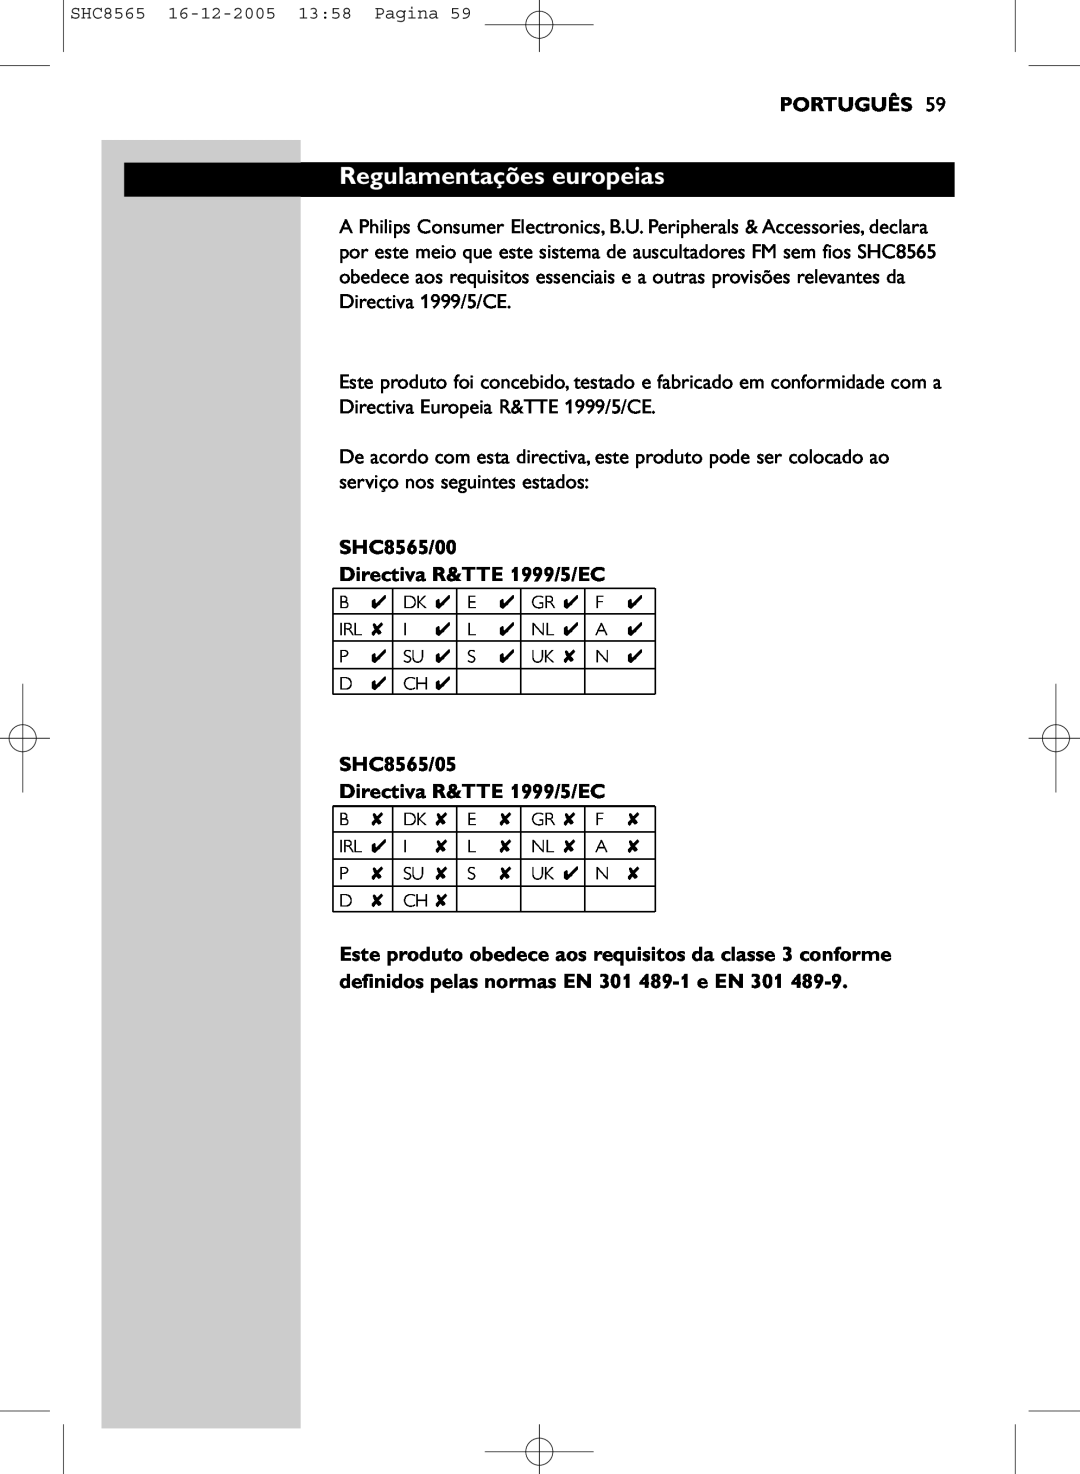 Philips manual Regulamentações europeias, Português, SHC8565/00 Directiva R&TTE 1999/5/EC 